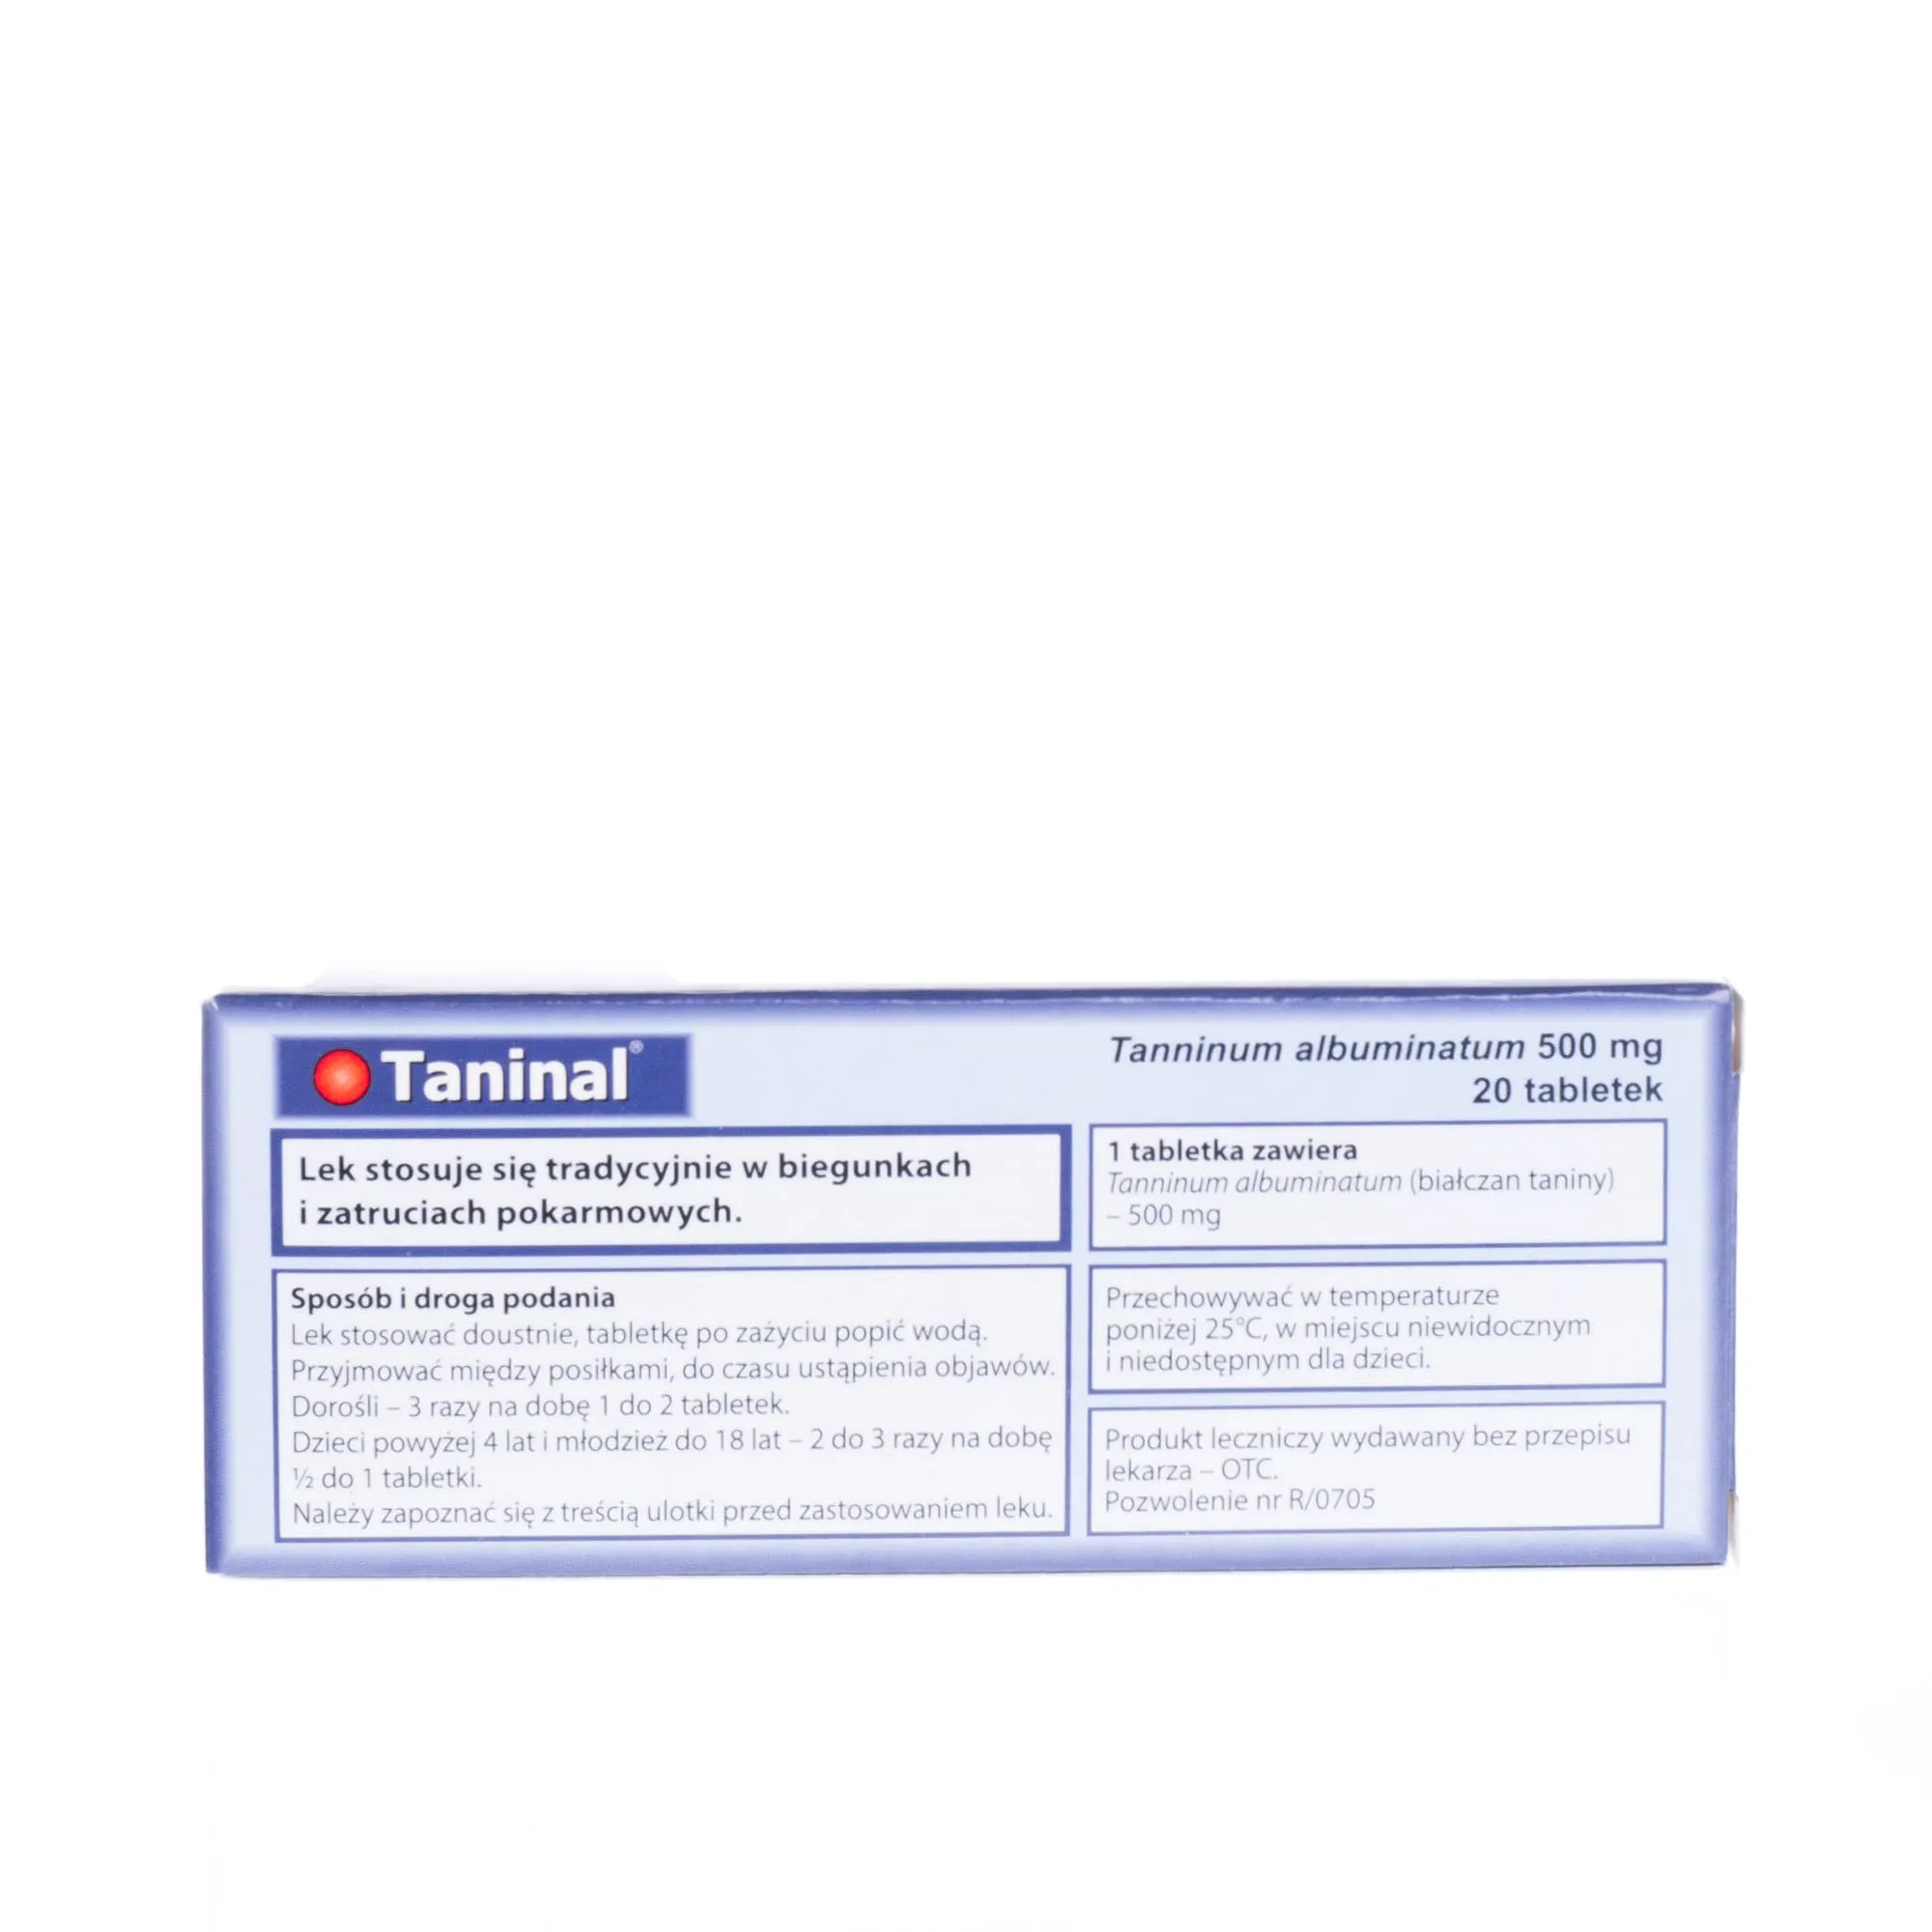 Taninal 500 mg - 20 tabletek stosowanych tradycyjnie w biegunkach i zatruciach pokarmowych 